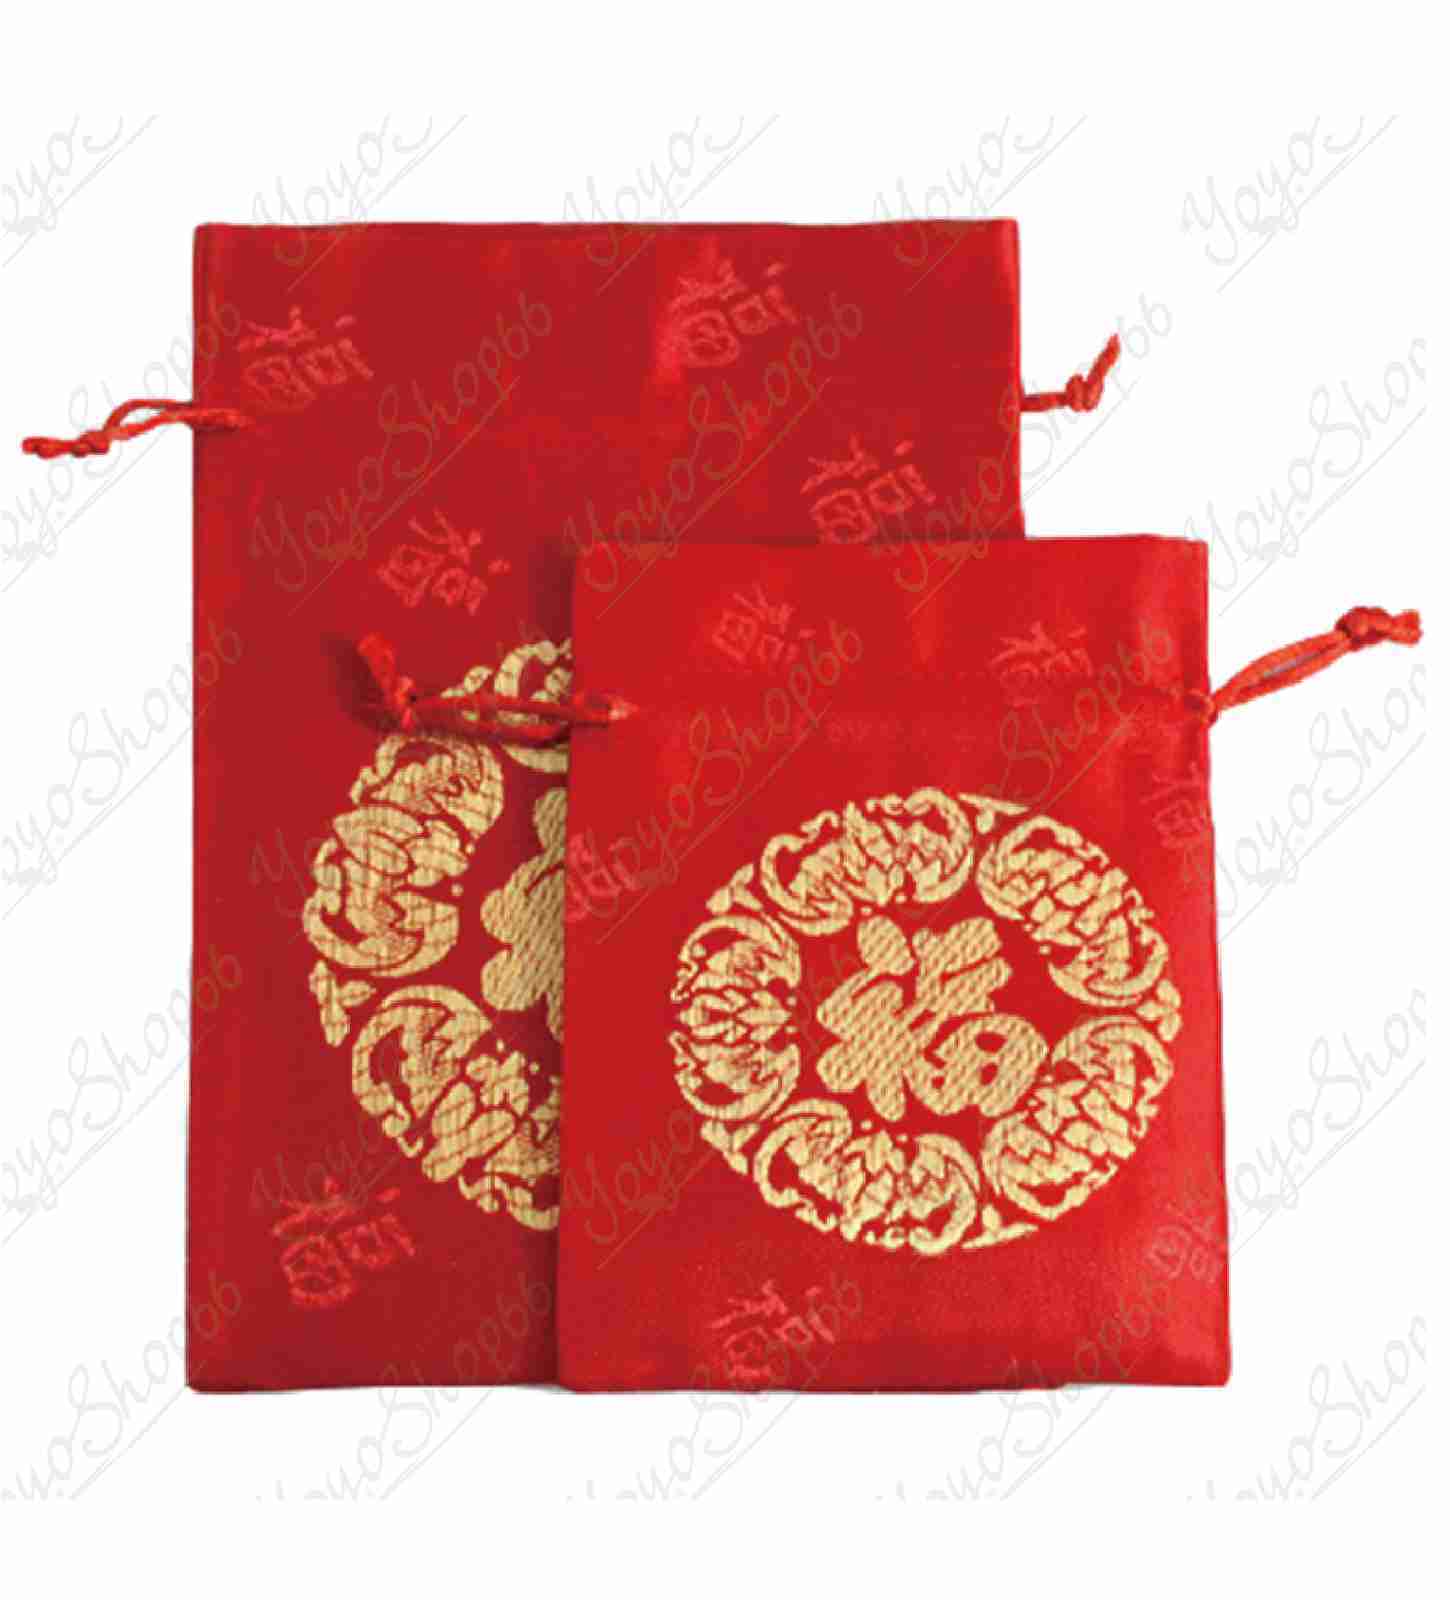 #620【(大)1個13X18 CM】小福袋錦囊(1入) 新年福袋 紅色束口袋 絨布收納袋 紅色小布袋 【愛尚生活】